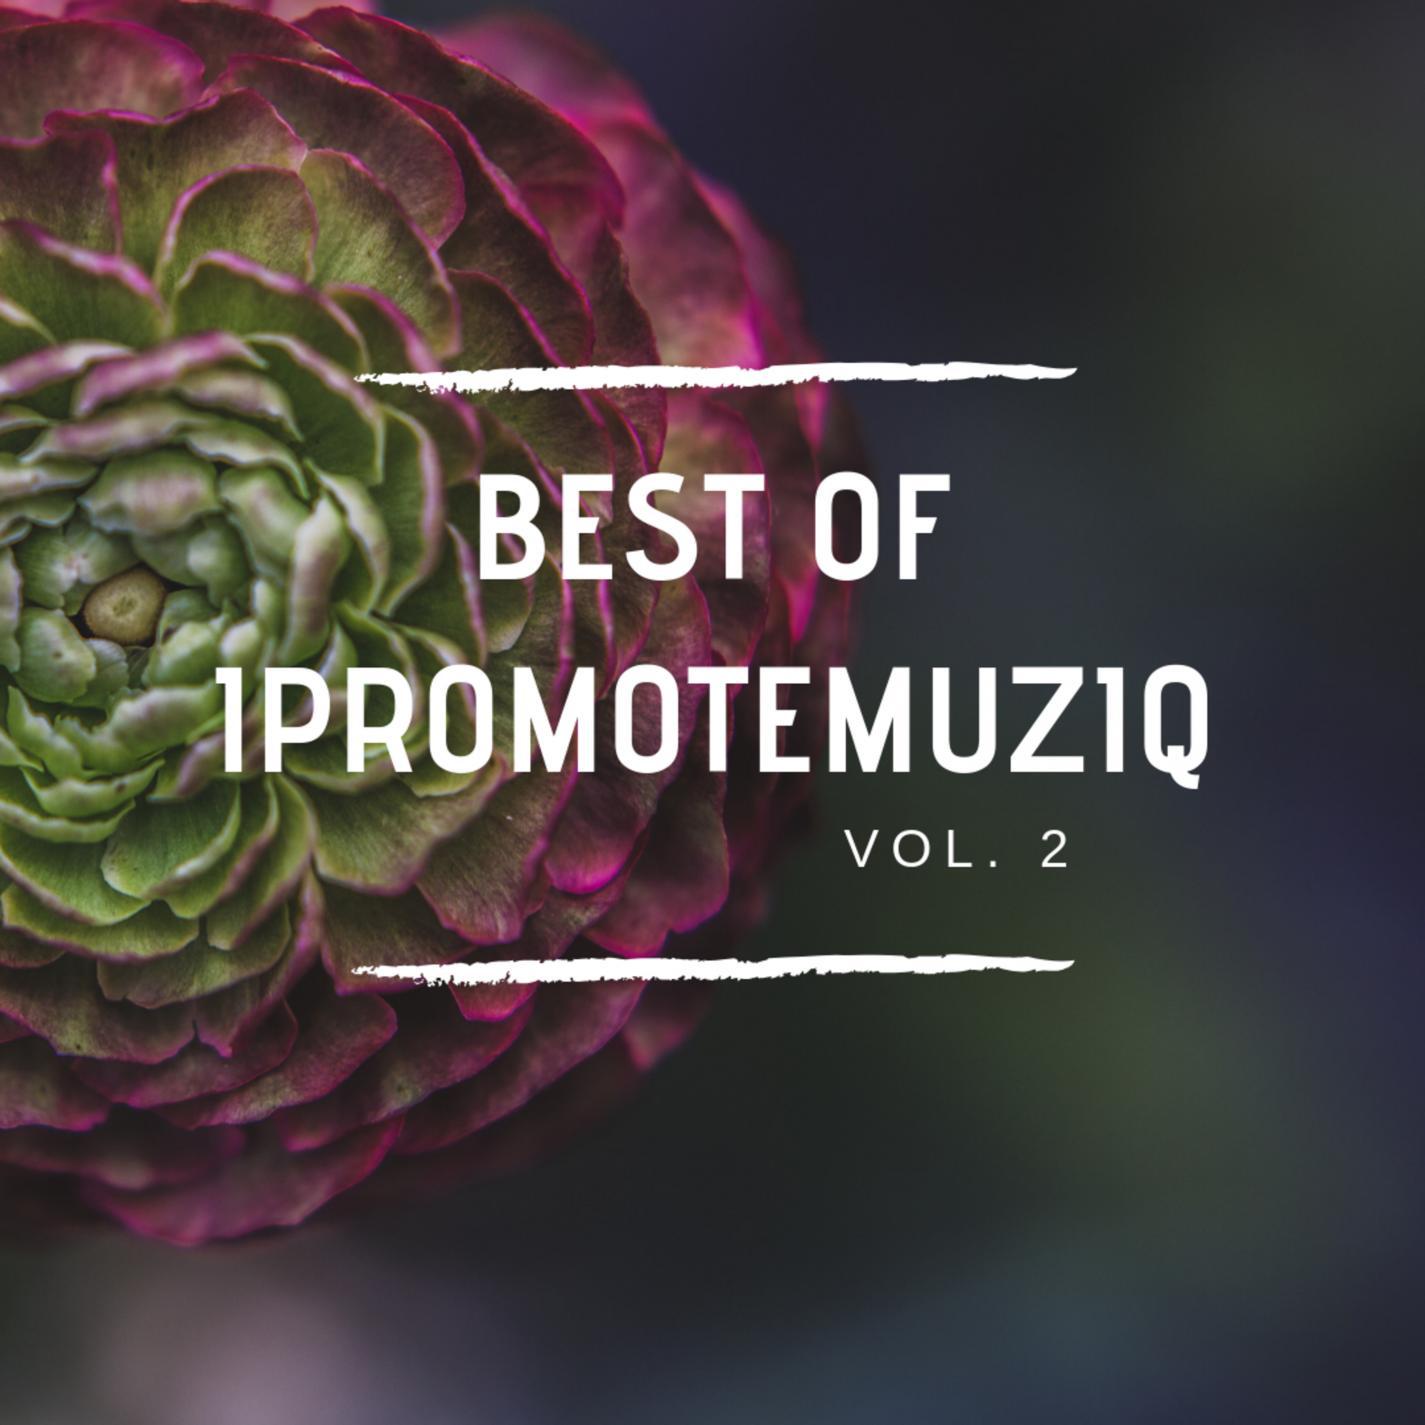 Best of Ipromotemuziq Vol. 2